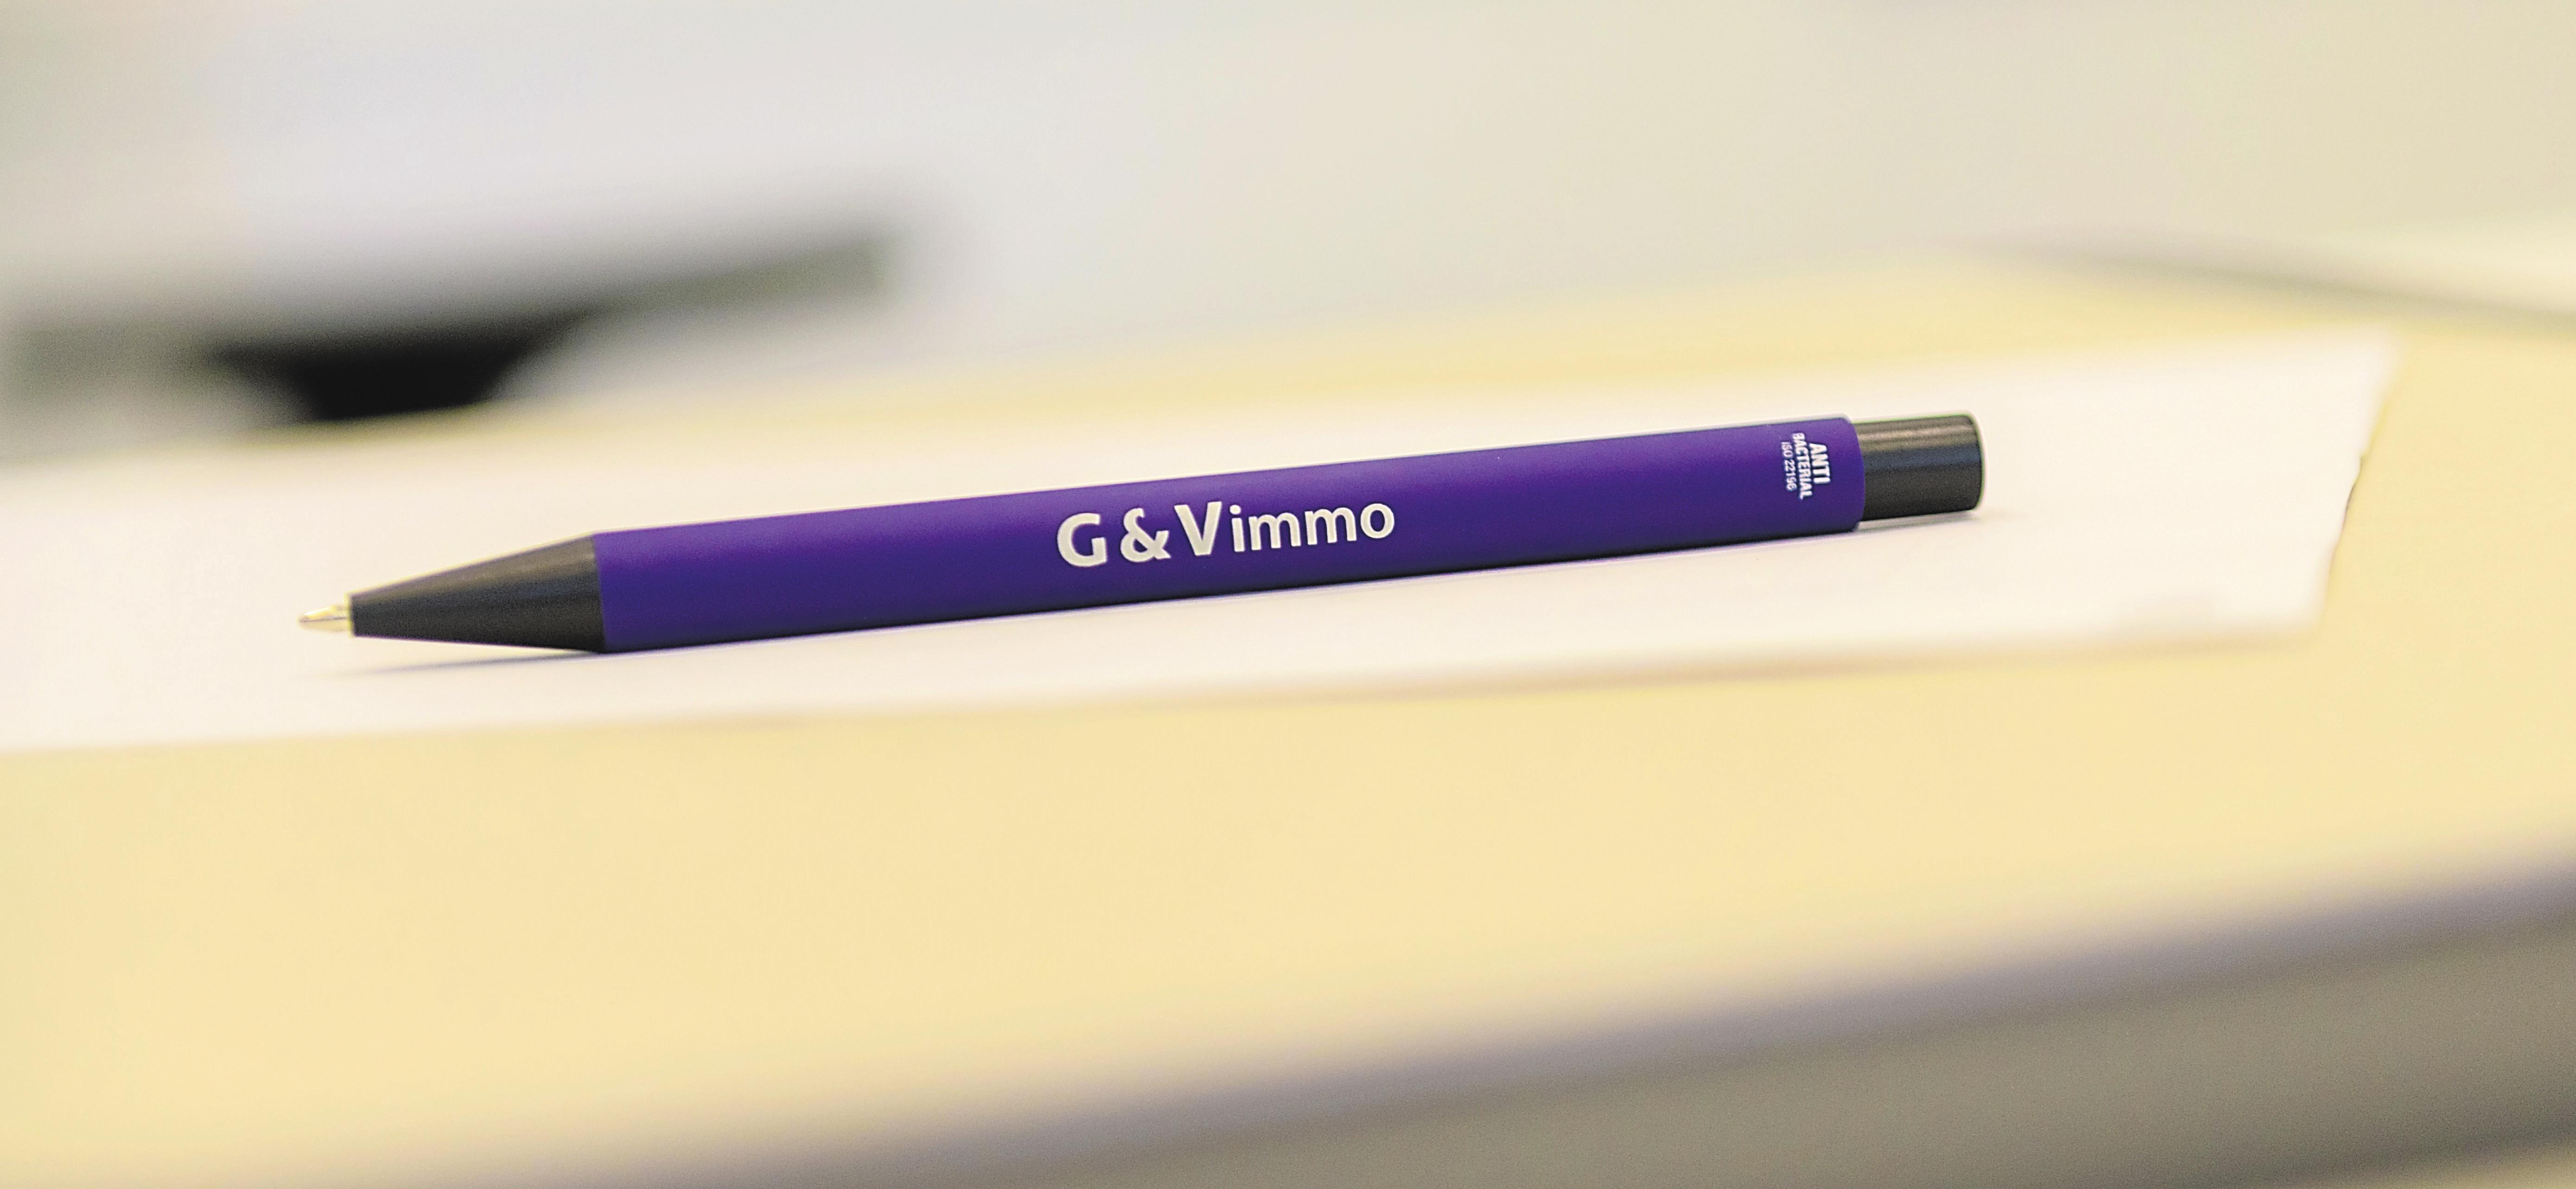 G&V Immo met la satisfaction des clients en première place-3